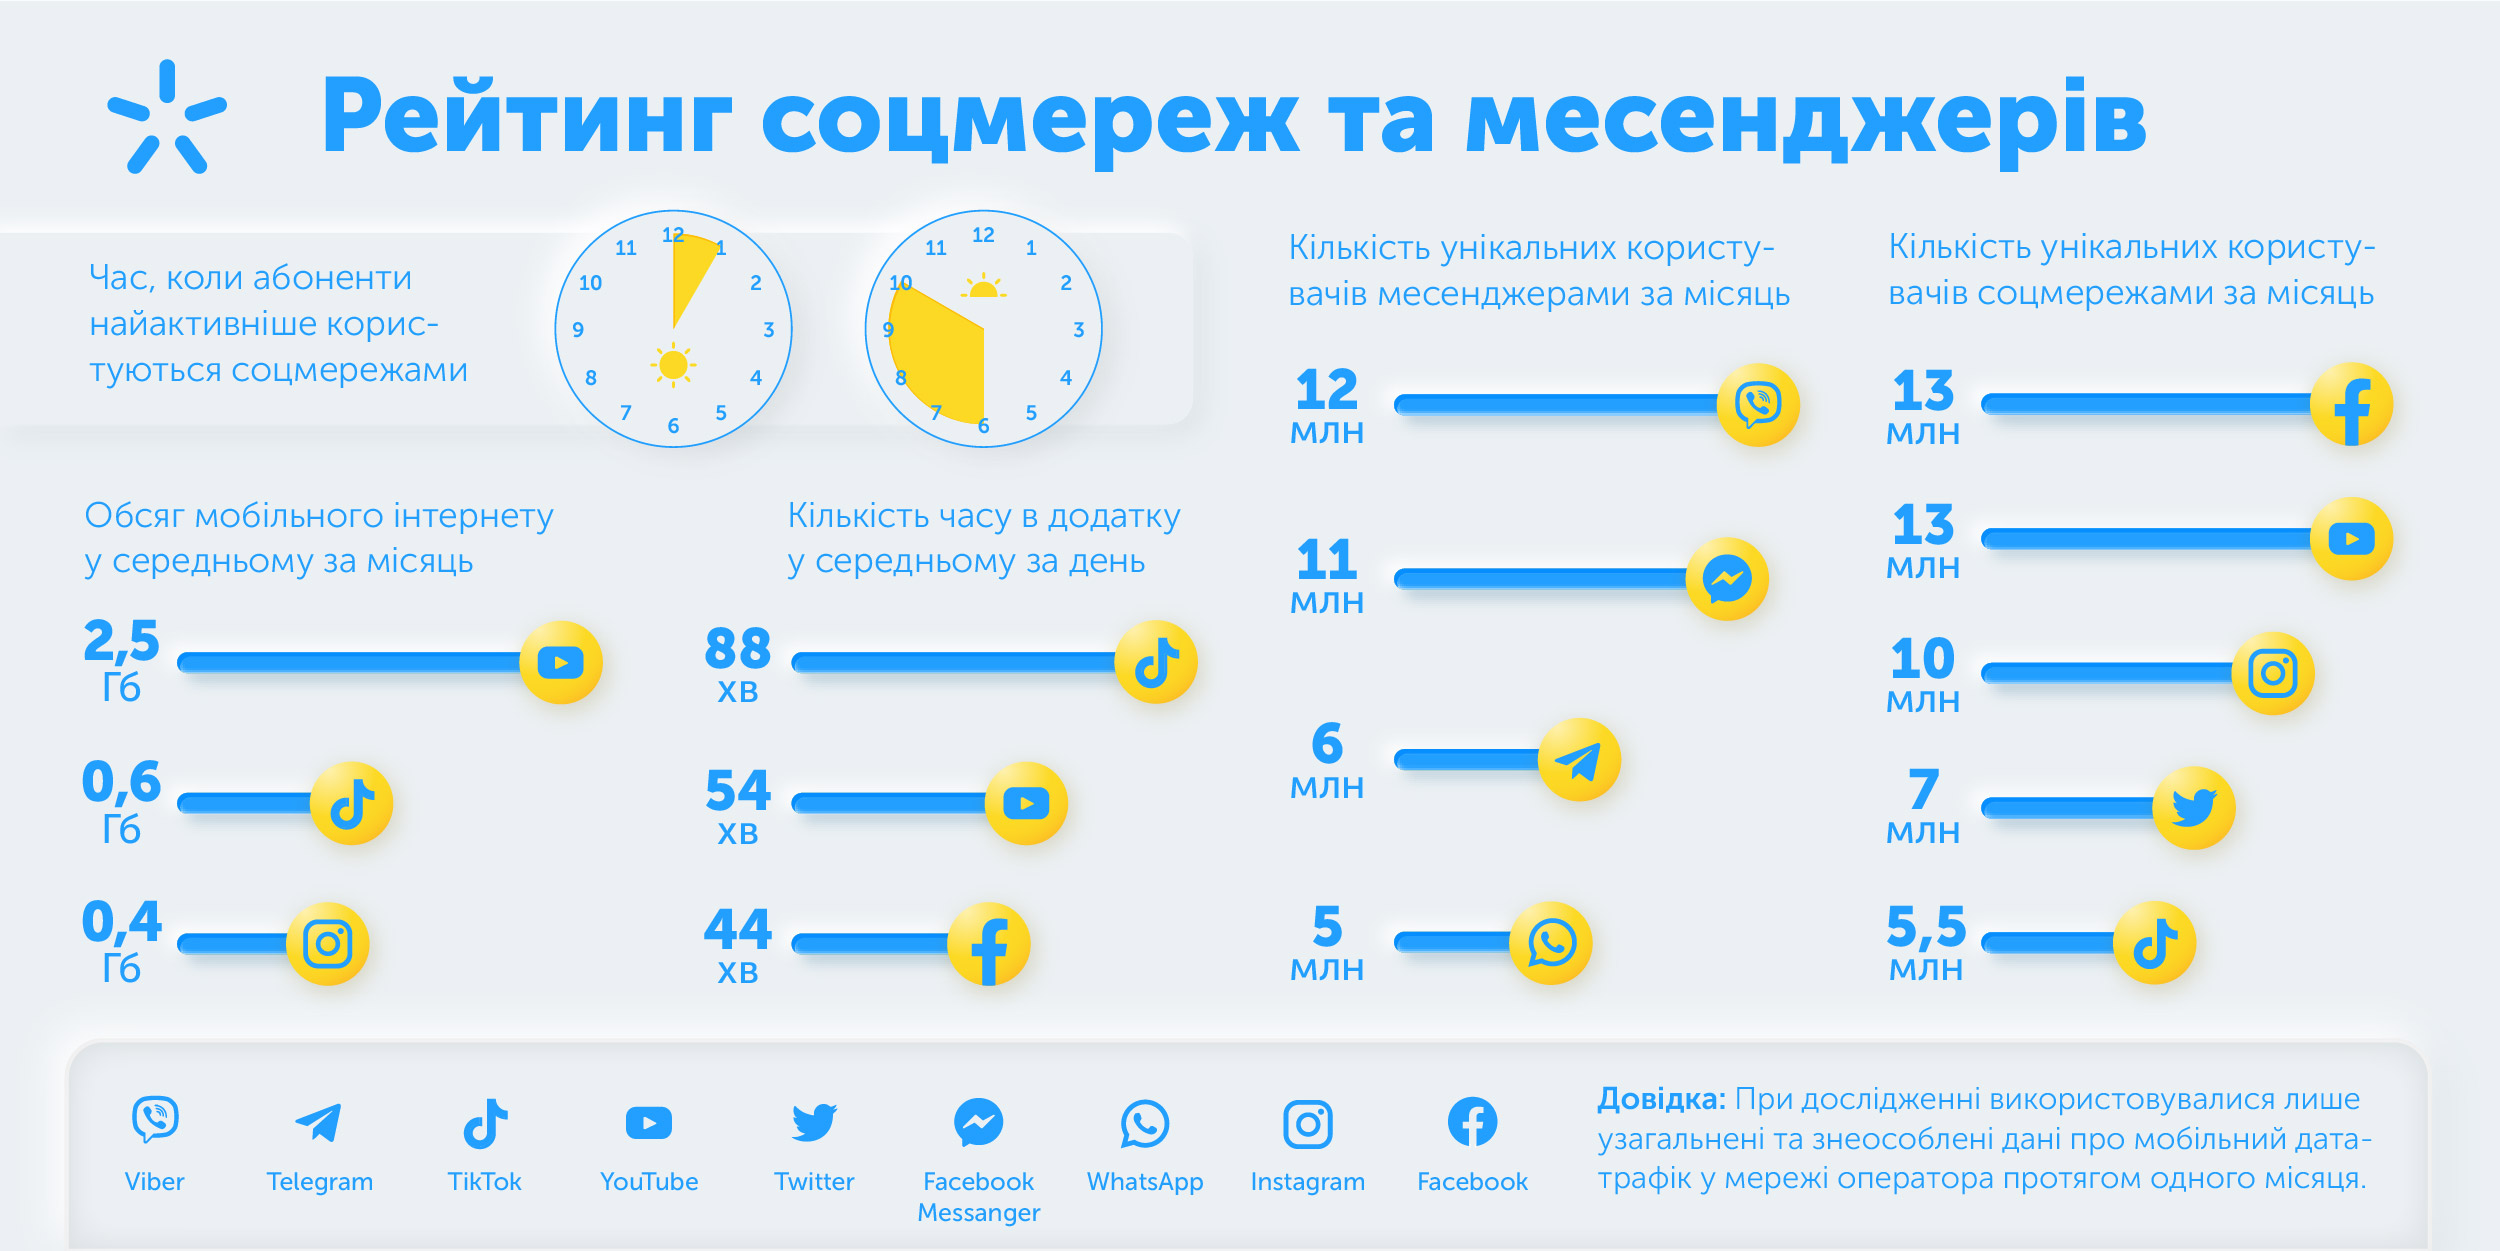 1,5 часа в день в Tik Tok: Киевстар составил рейтинг соцсетей и мессенджеров